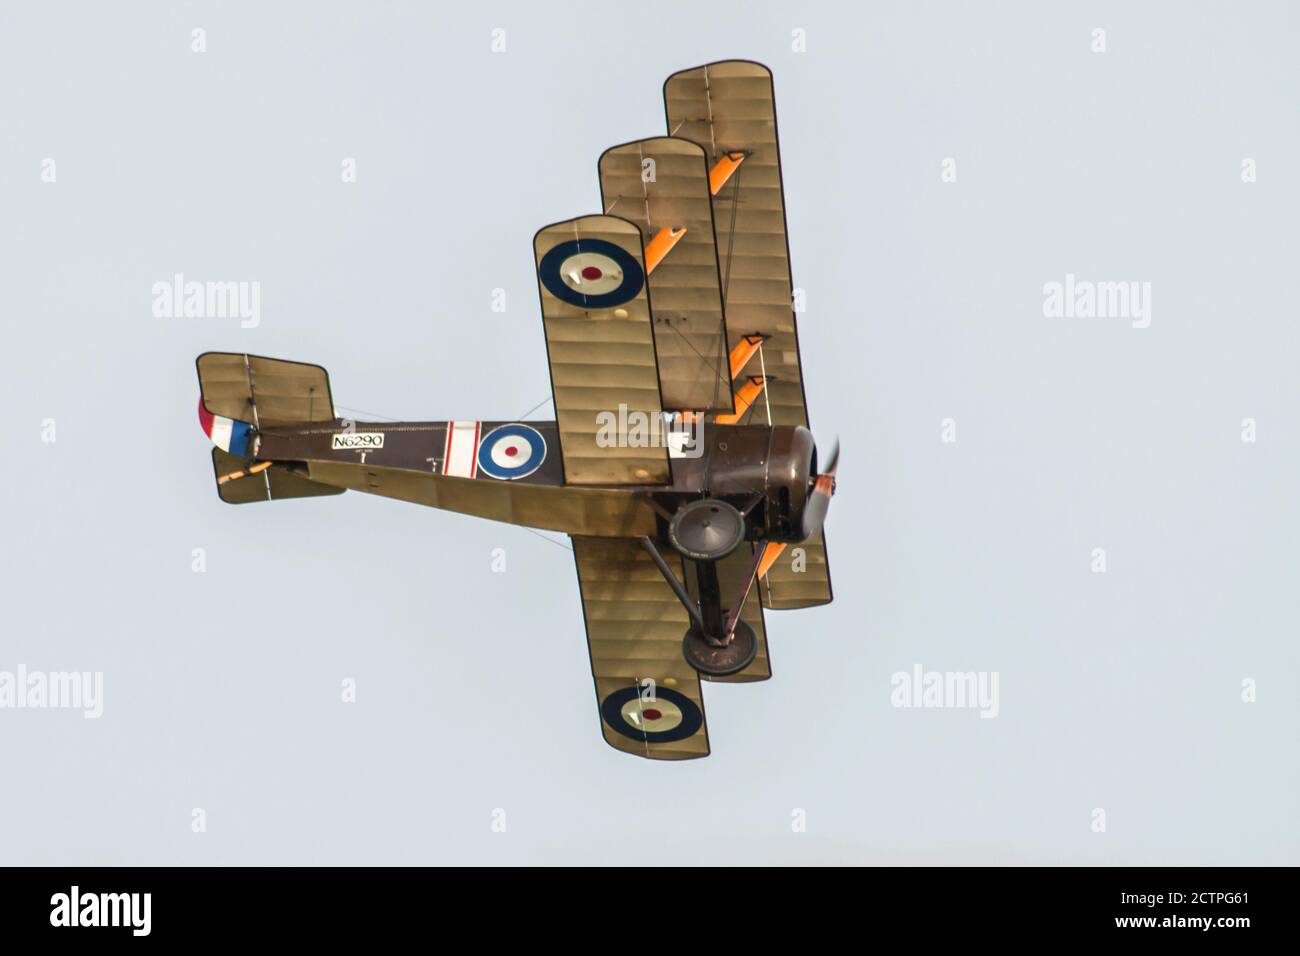 Le Sopwith Triplane était un avion de chasse monoplace conçu et fabriqué par le Sopwith Aviation Company pendant la Première Guerre mondiale. Banque D'Images